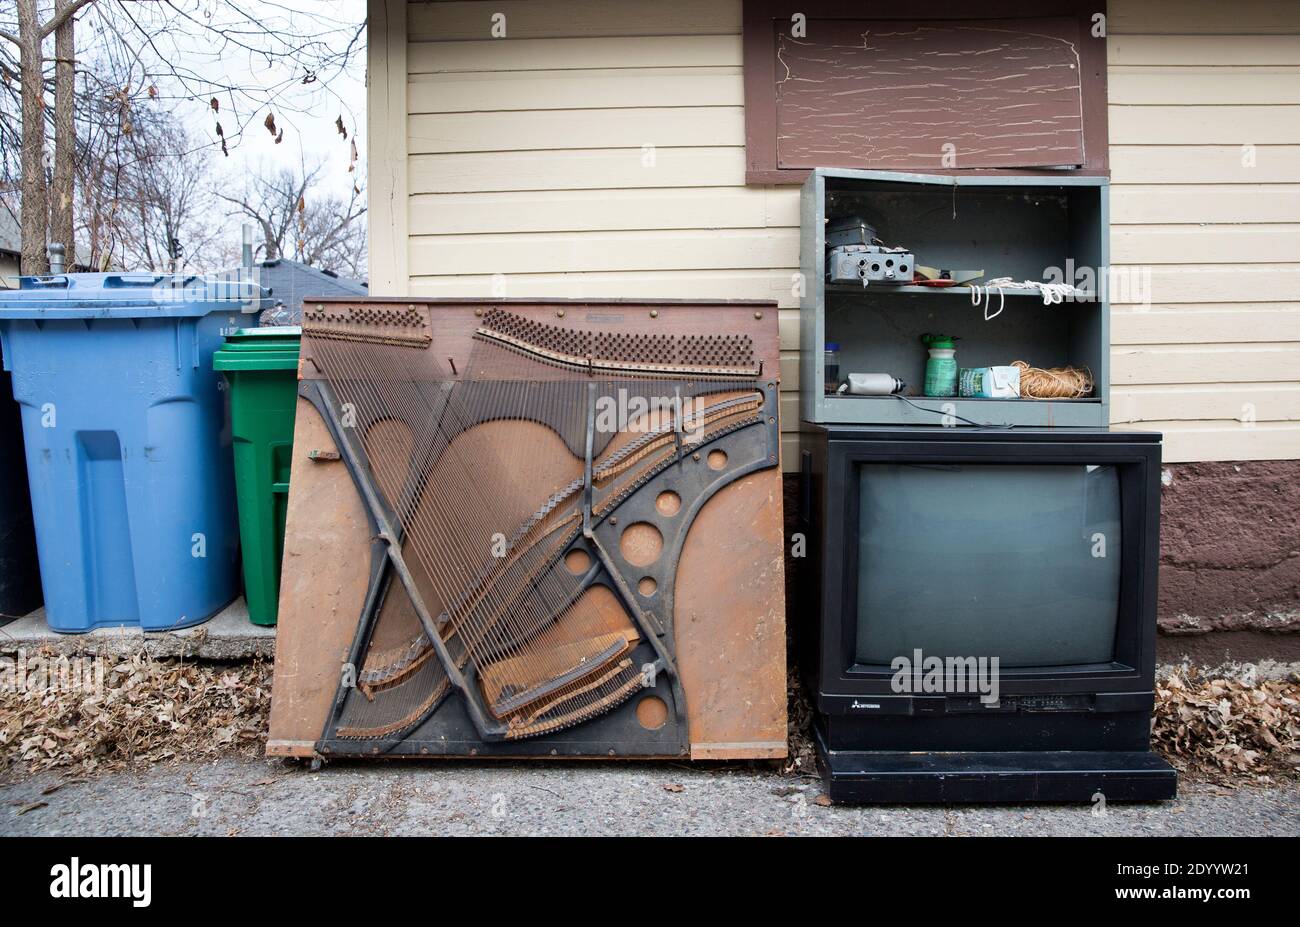 Ein altes Klavier-Soundboard, Elektronik und ein Fernseher in der Gasse warten auf Müll, Abfallbeseitigung und Recycling. Stockfoto